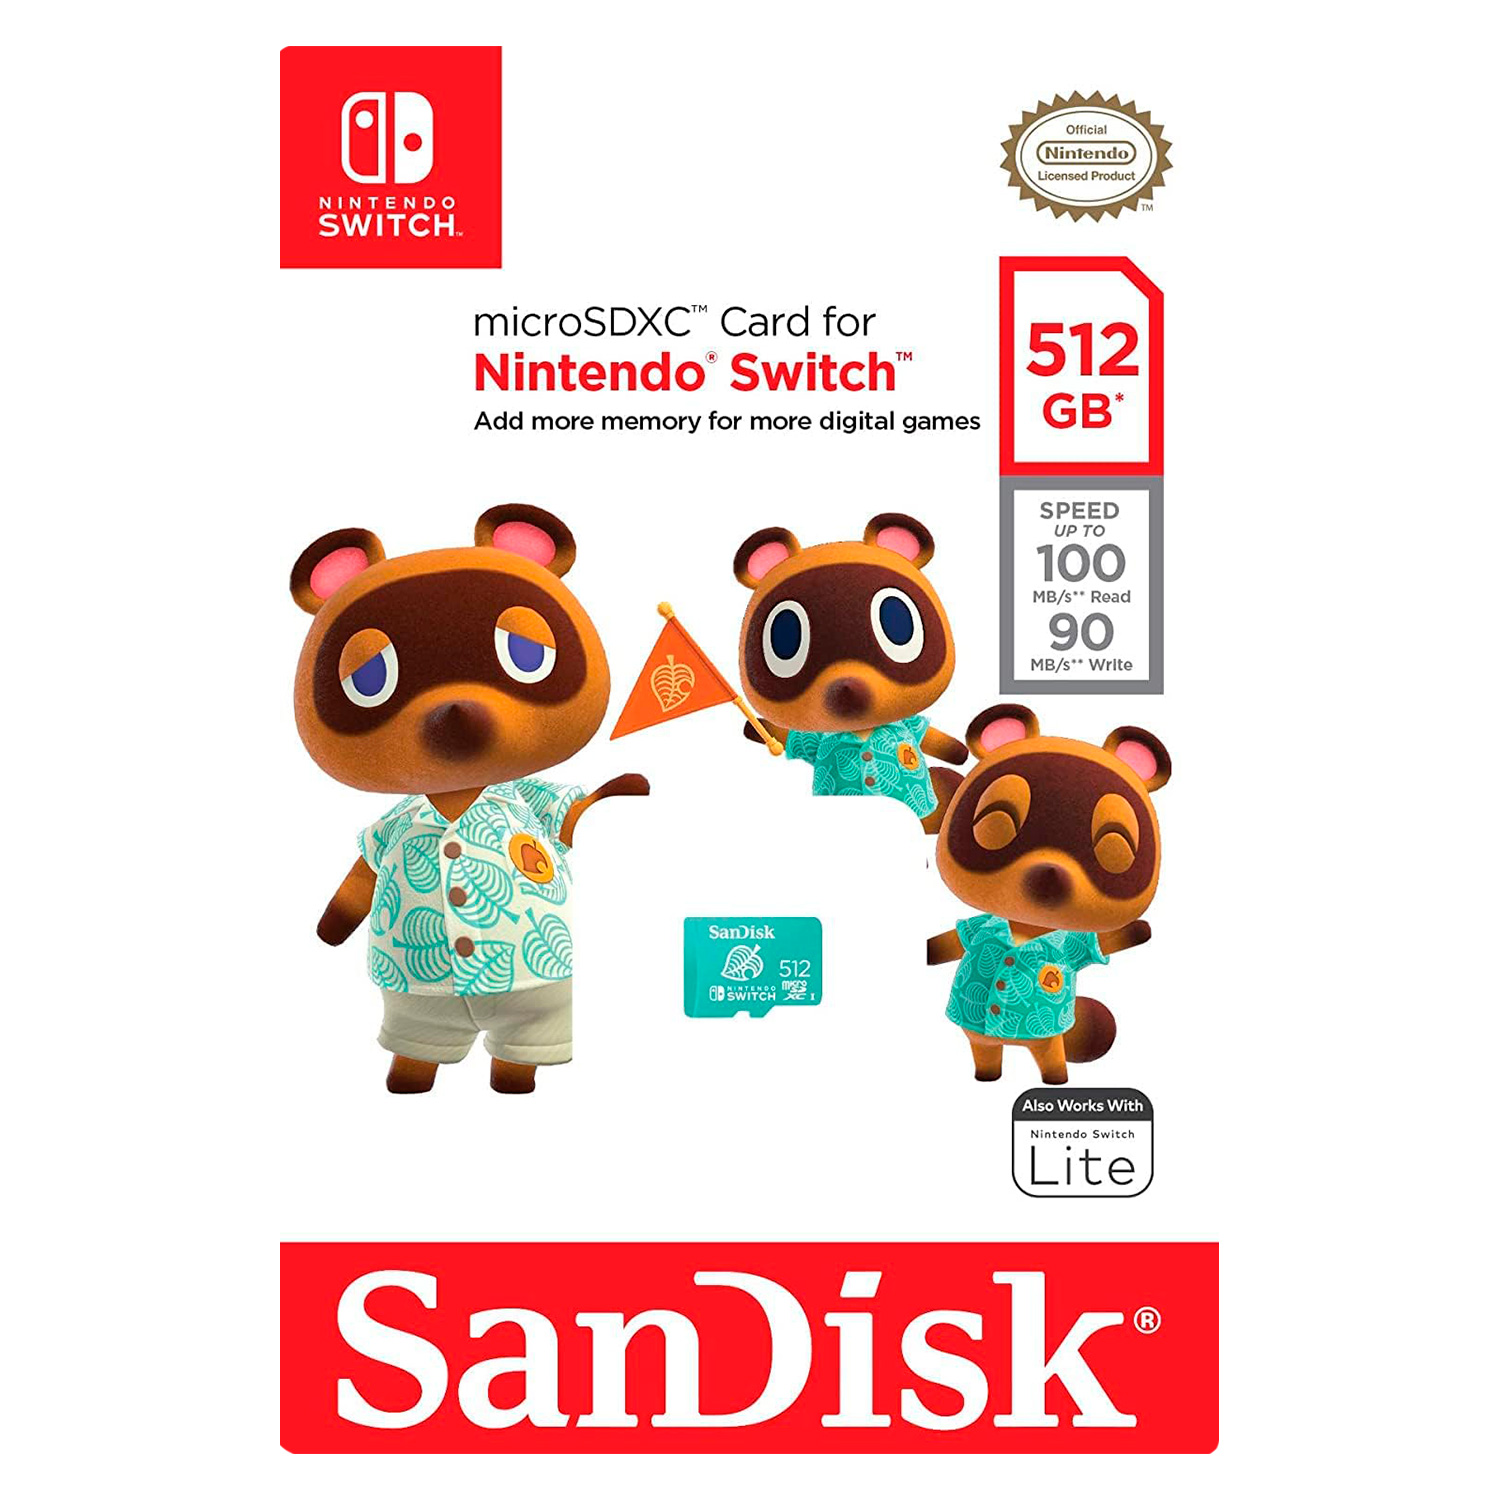 Cartão de Memória Micro SD SanDisk Nintendo Switch 512GB 100Mbs - SDSQXAO-512G-GNCZN